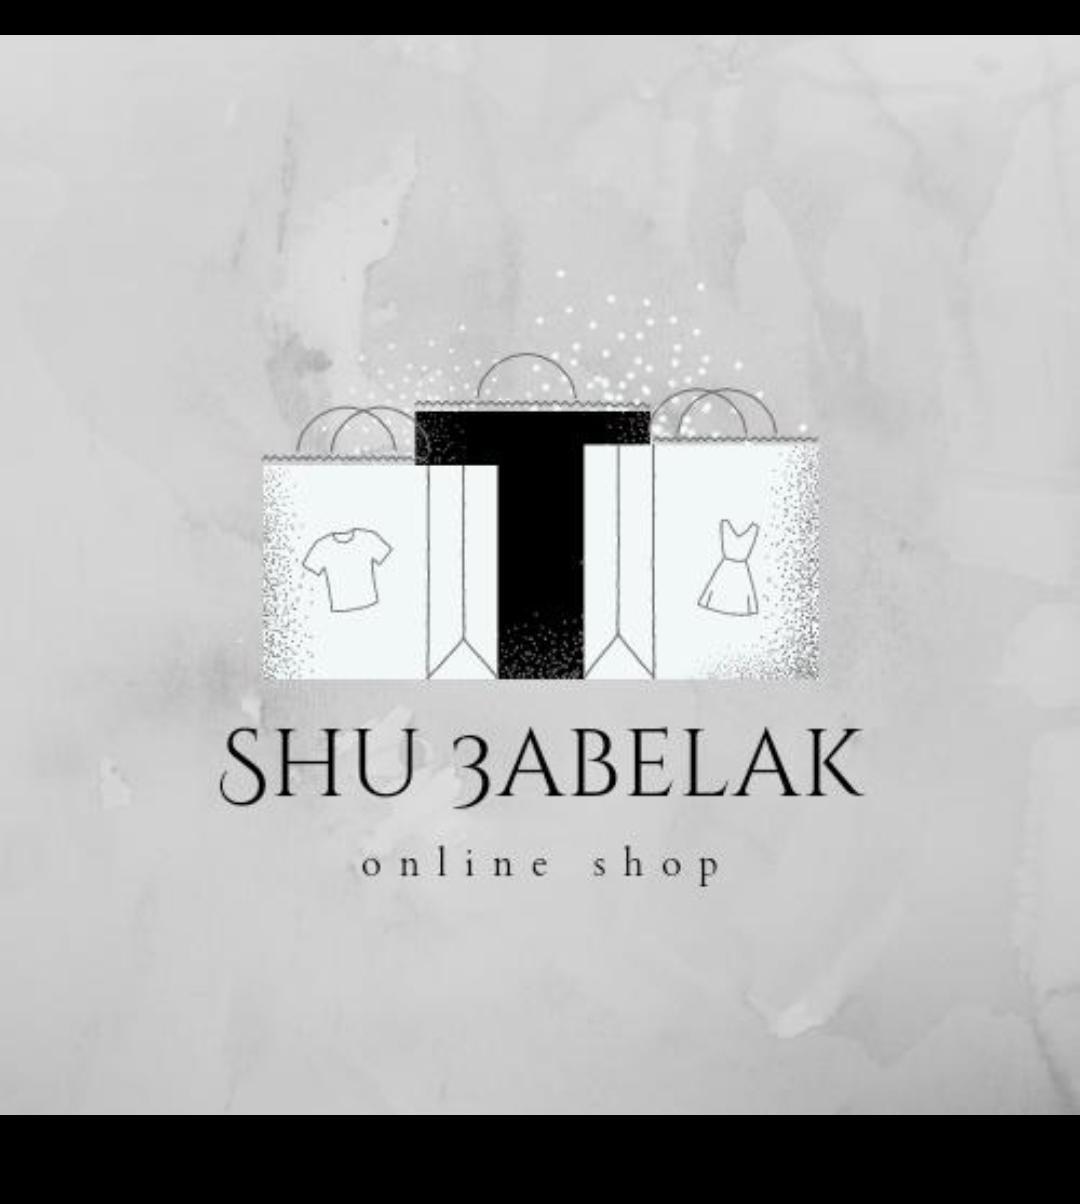 Shu-3abelak